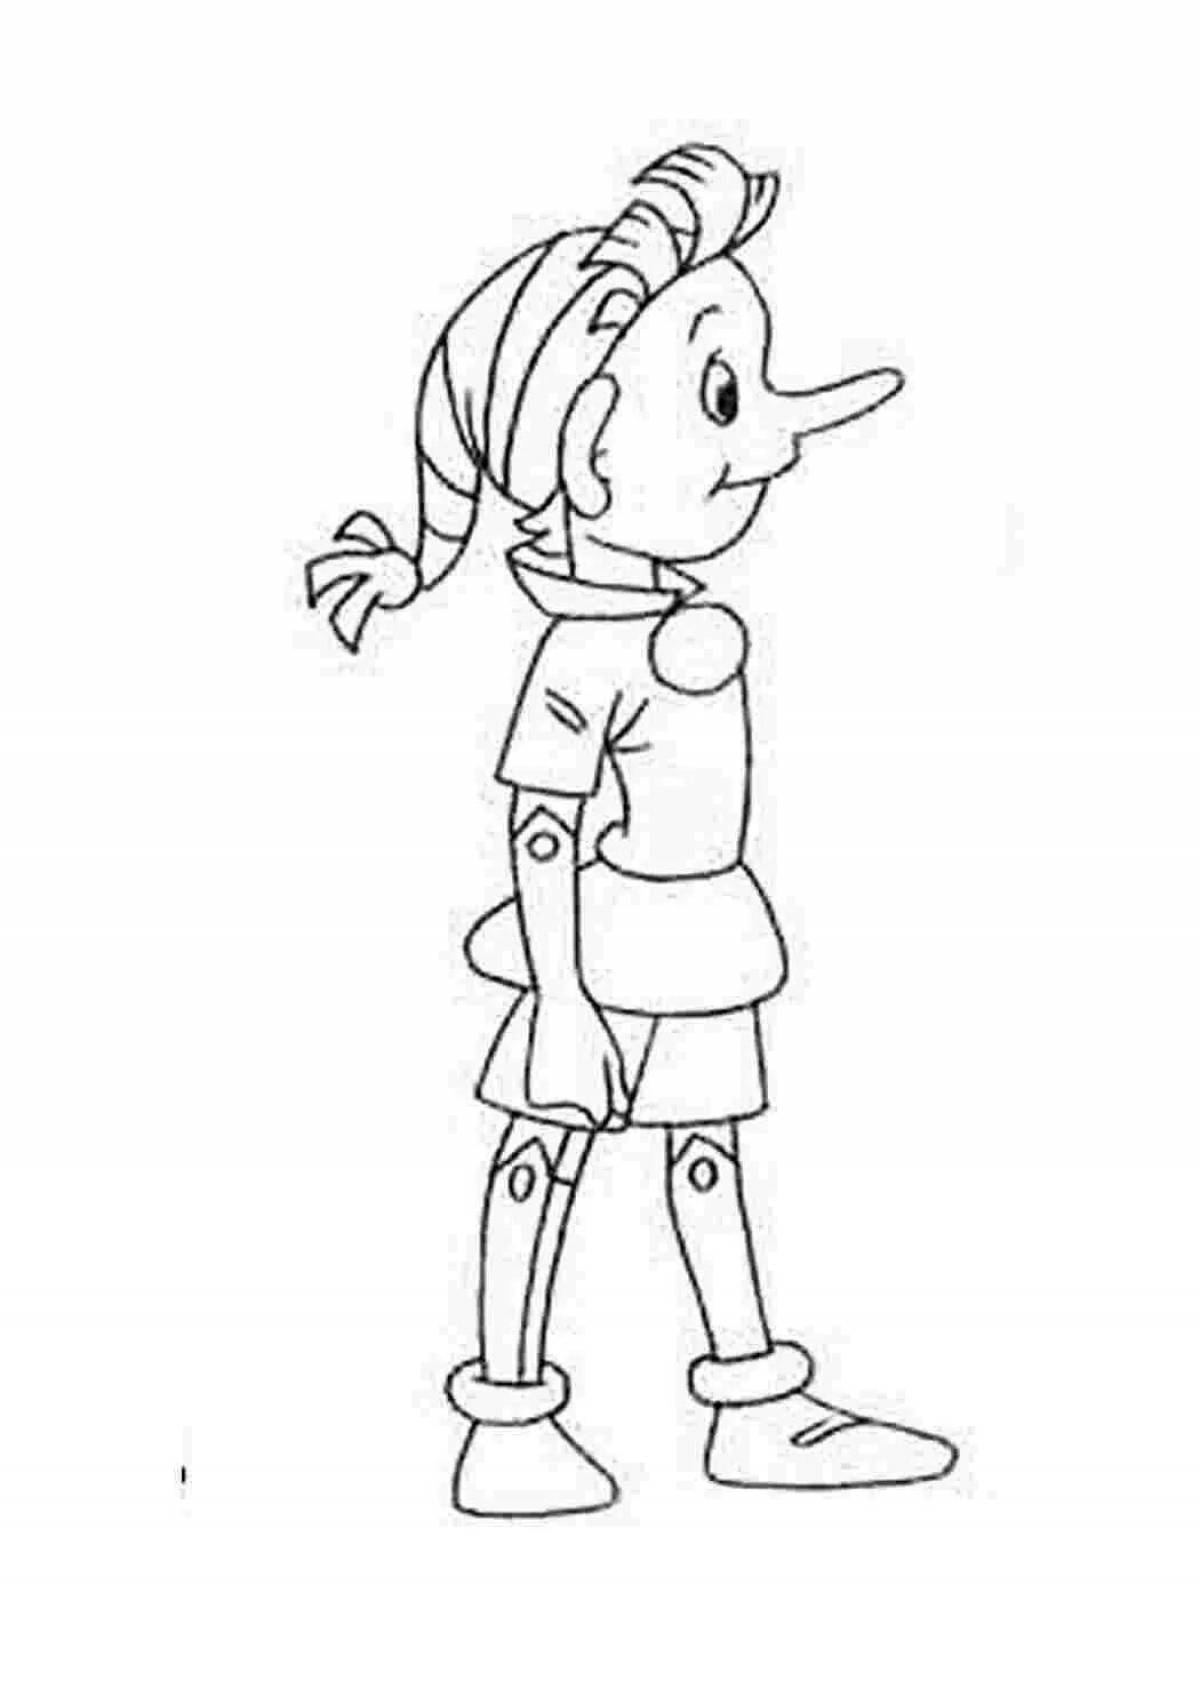 Shiny Pinocchio coloring page